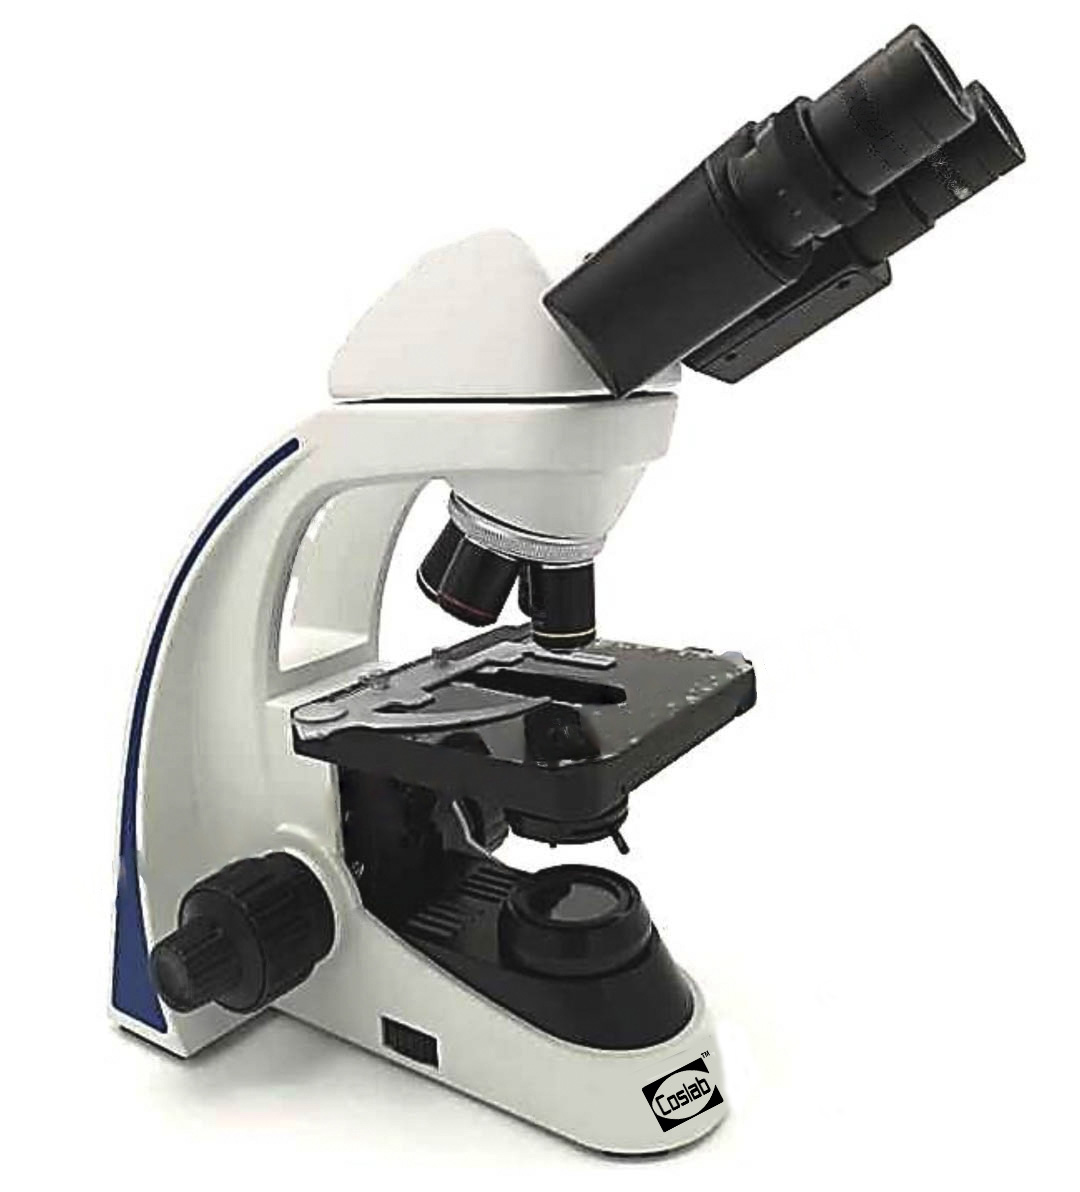 https://www.microscopesmanufacturer.com/uploads/images/2023-07-07-09-38-47am/831cdfa7fb2be9566ff60b33997d2d60.jpg